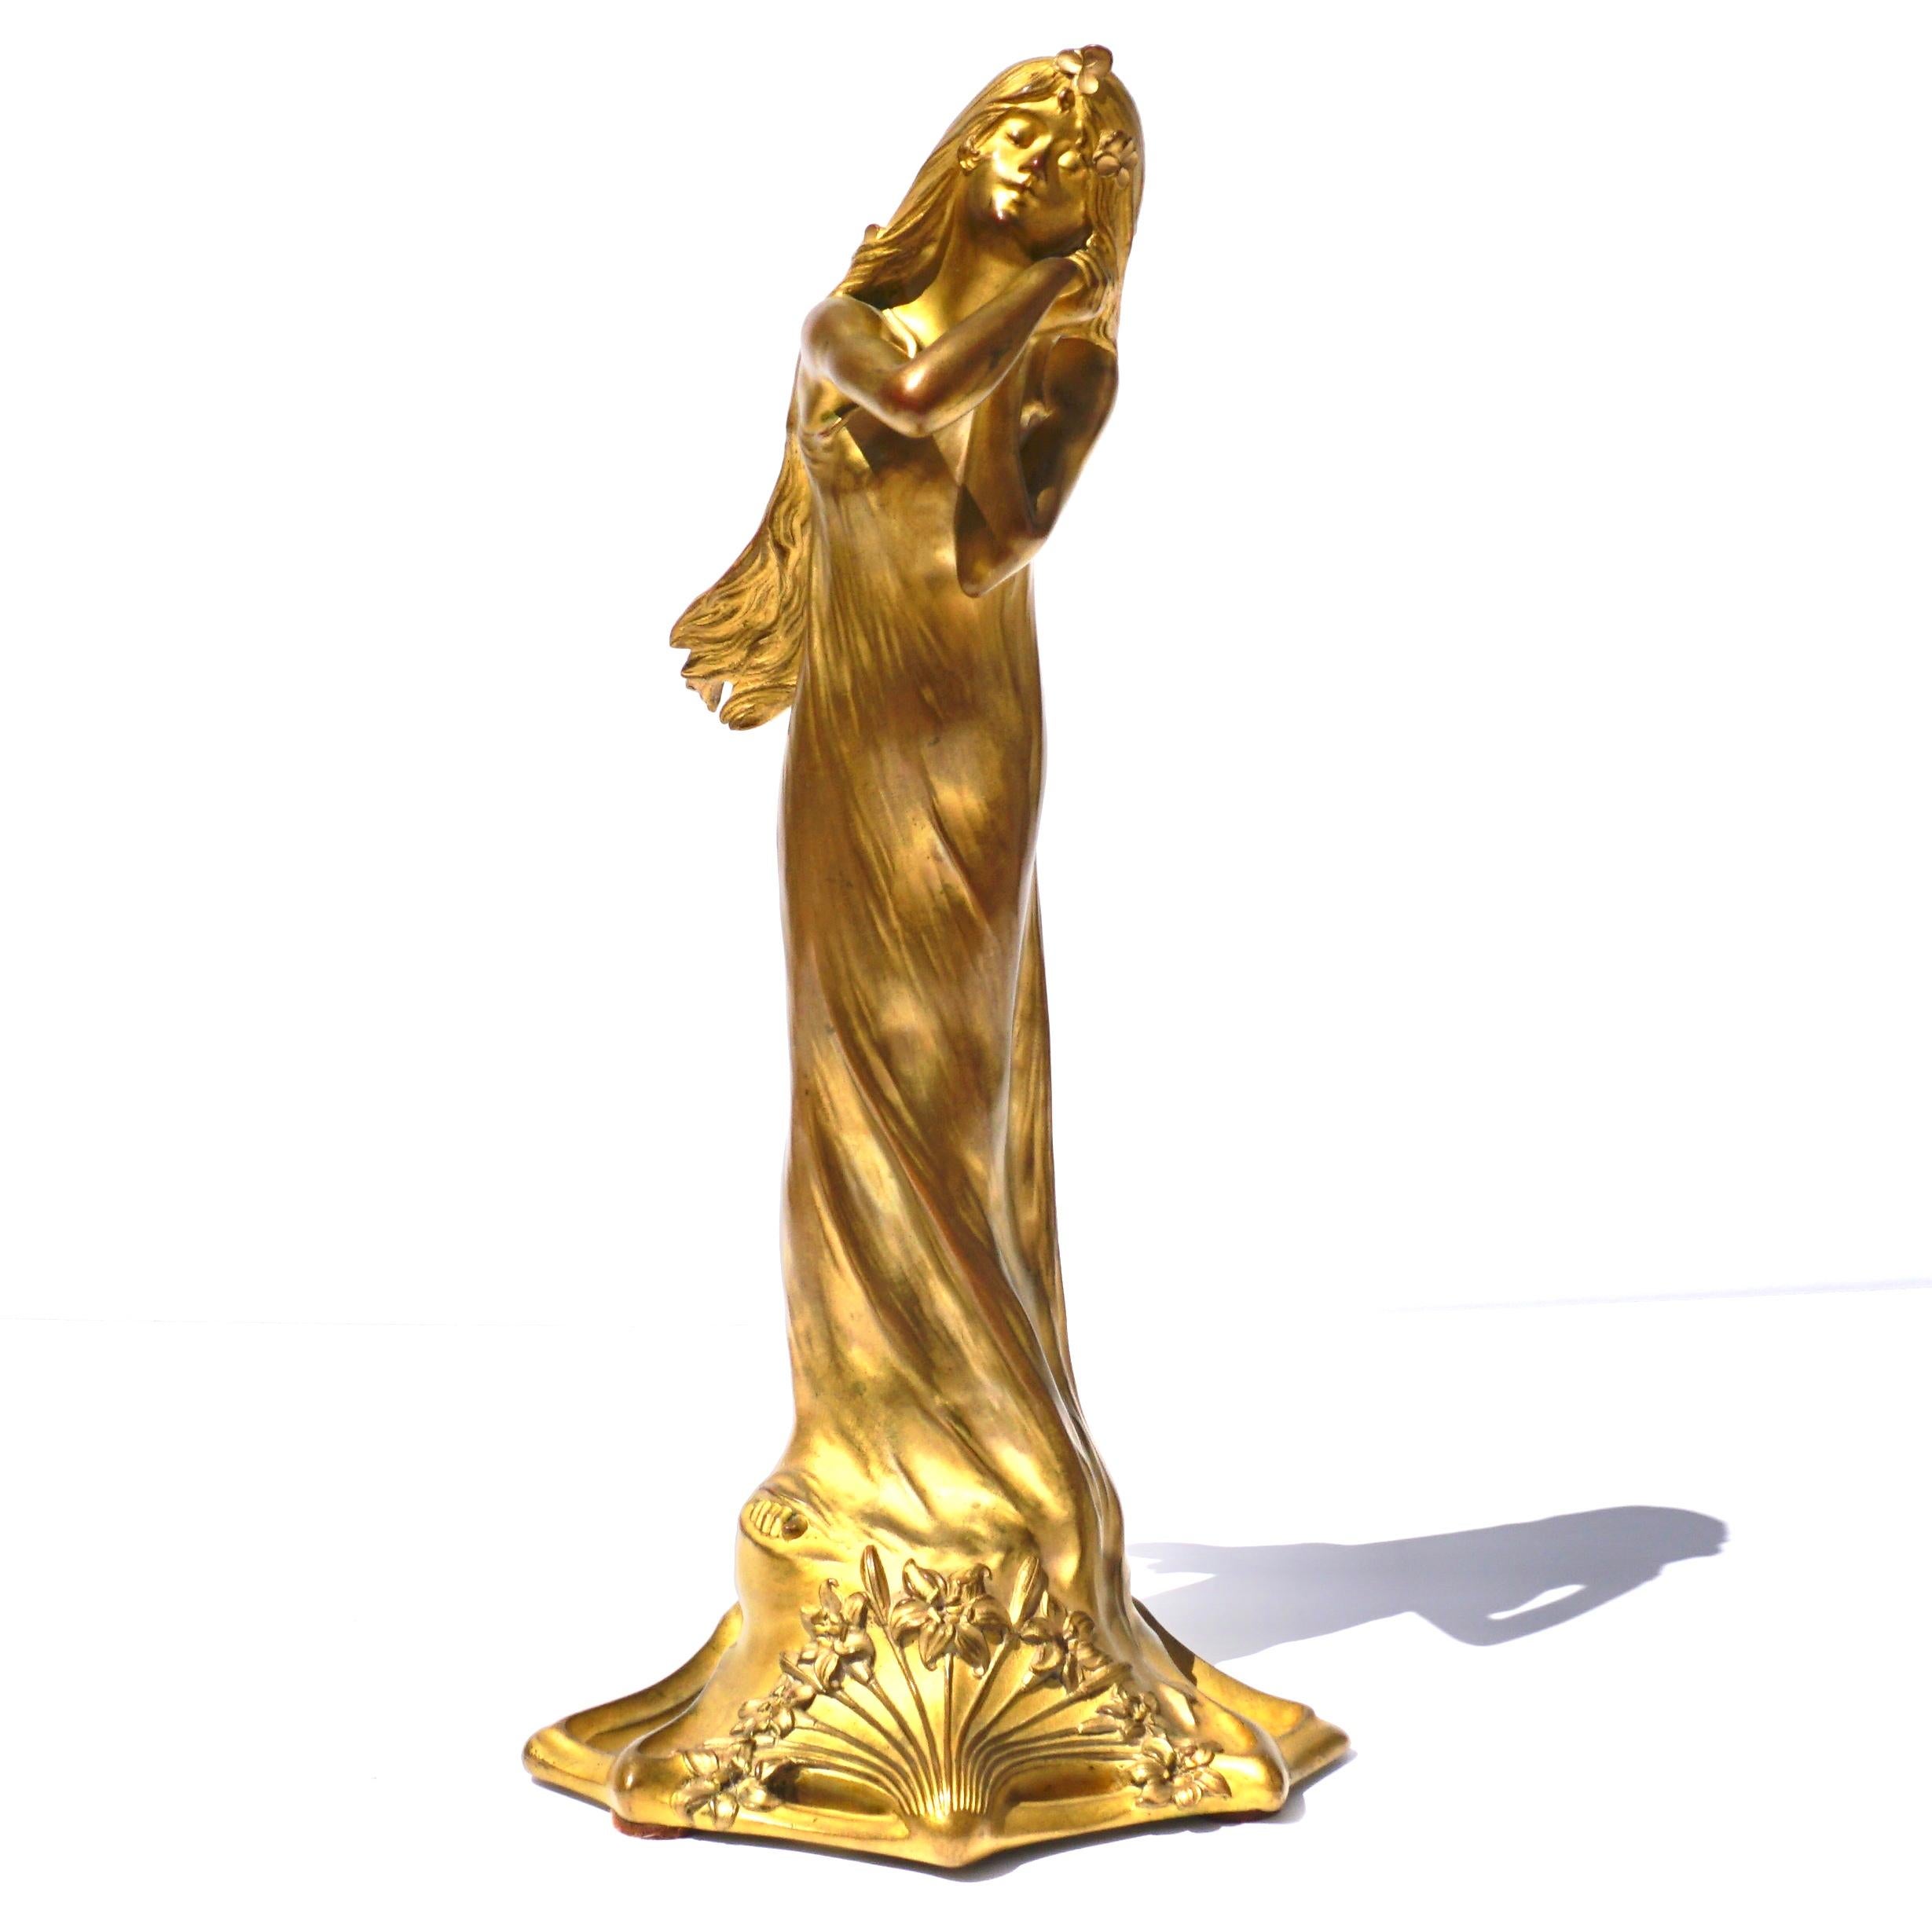 Charles Raphaël Peyre (französisch 1874-1949)

Französische Jugendstilfigur eines Mädchens aus vergoldeter Bronze
Guss von Louchet, um 1900
Modelliert in stehender Pose mit an die Wange gelegten Händen, bezeichnet mit Peyre und gestempelt mit